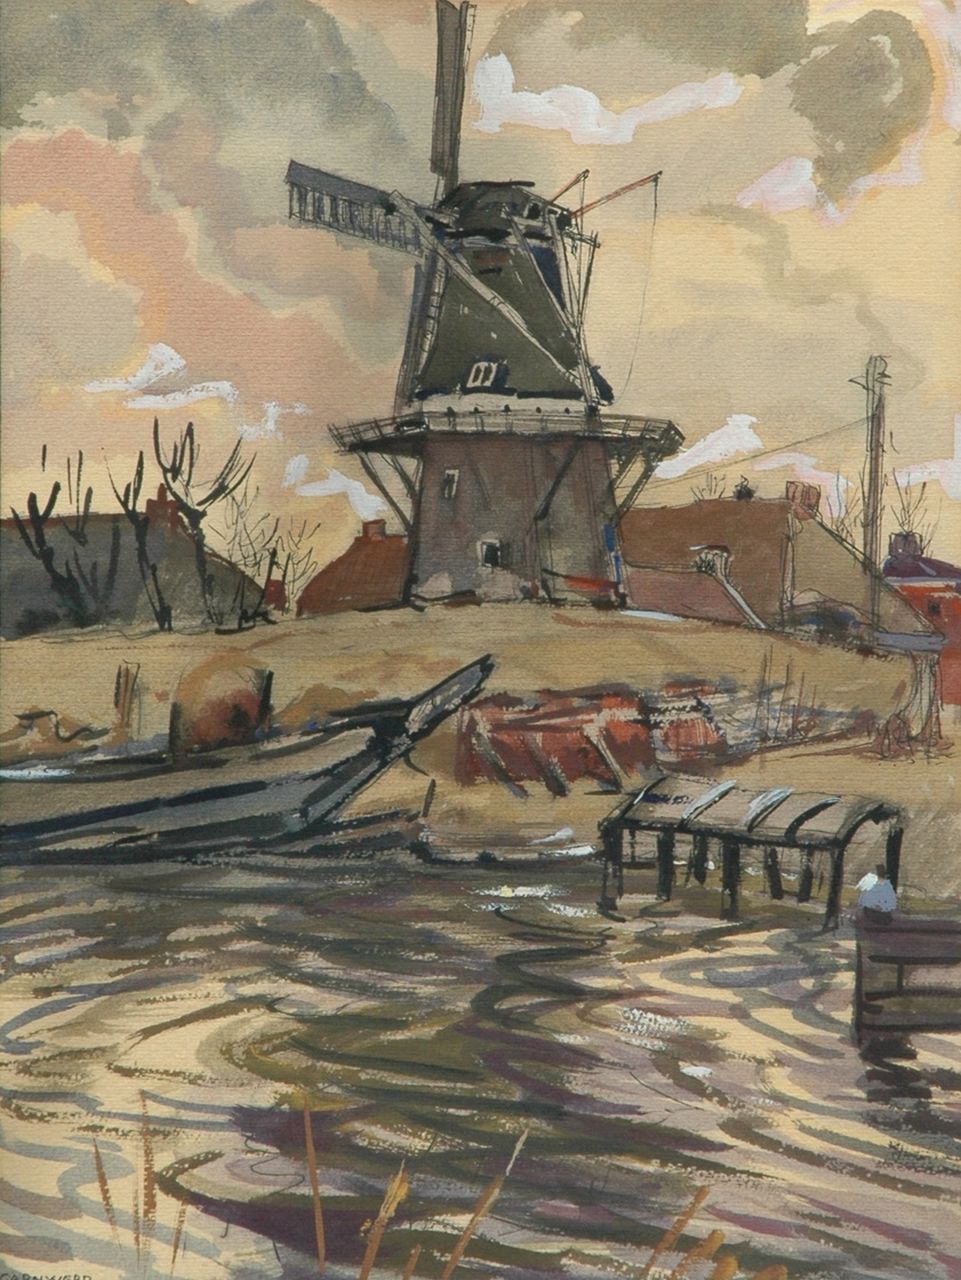 Vries J. de | Jannes de Vries, Windmill in Garnwerd, Ausziehtusche und Gouache auf Papier 49,2 x 37,5 cm, signed l.l. with monogram und dated 27-3-'54